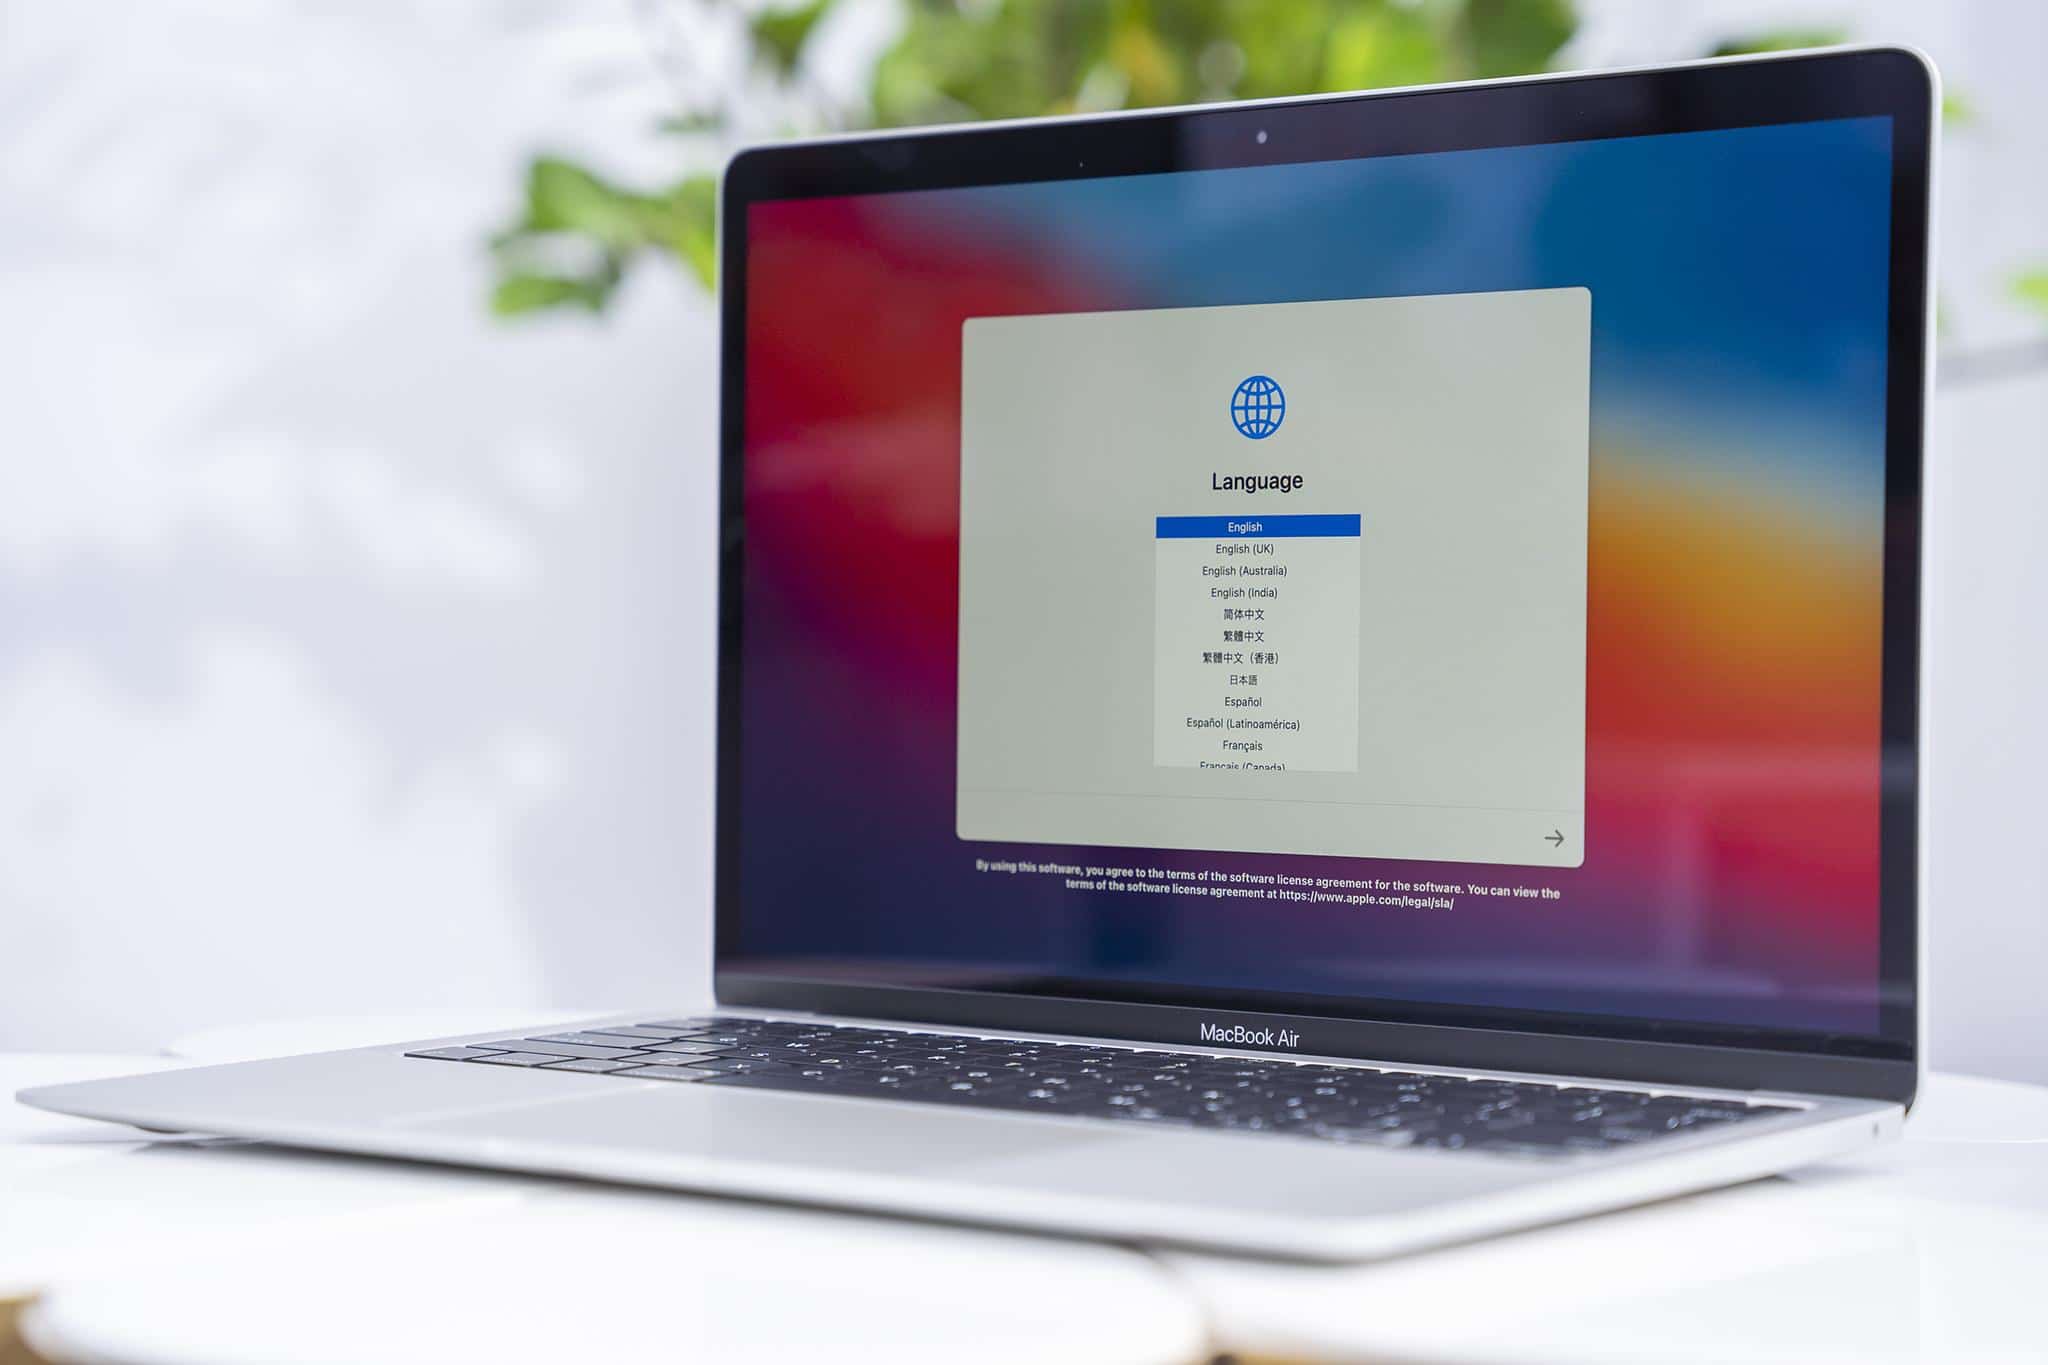 MacBook M1 đã được bán chính thức tại Việt Nam với giá từ 27.99 triệu